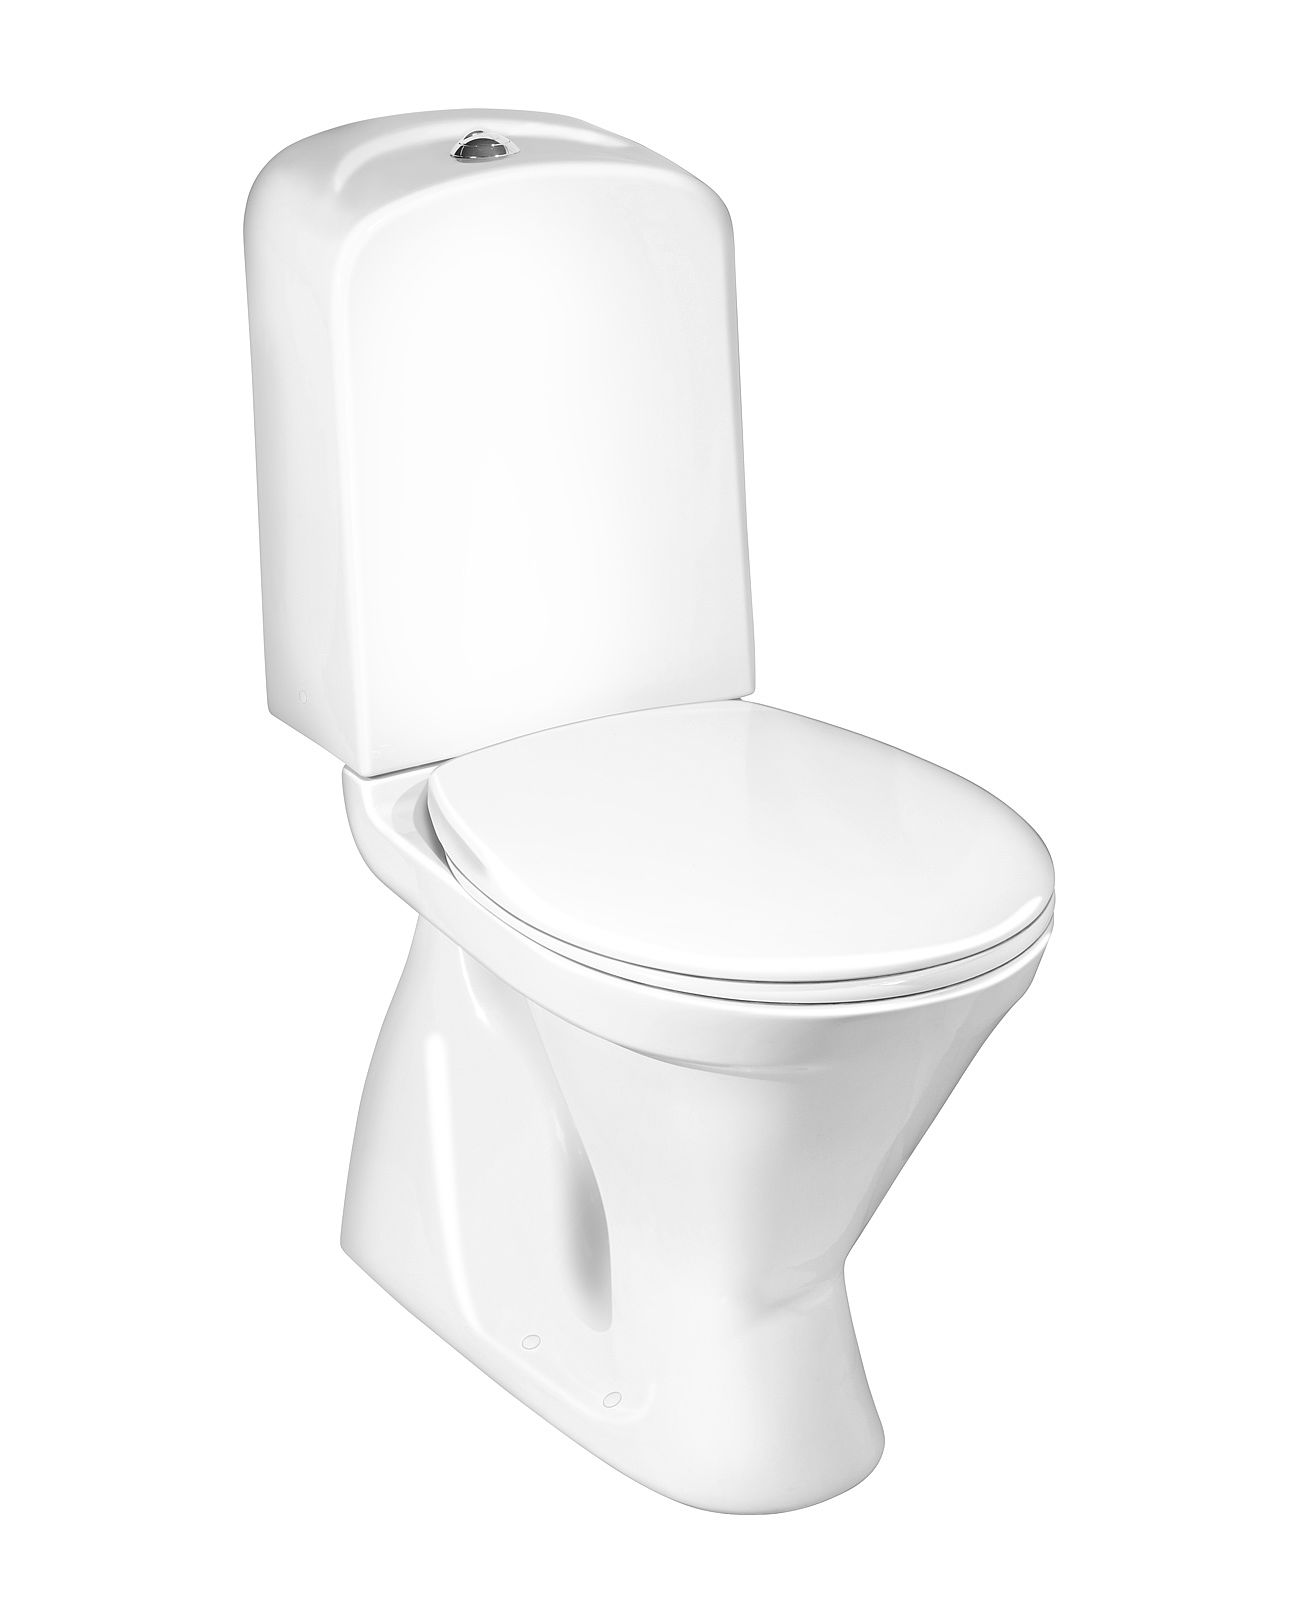 Toalettstol Gustavsberg Nordic³ 3500, standardsits